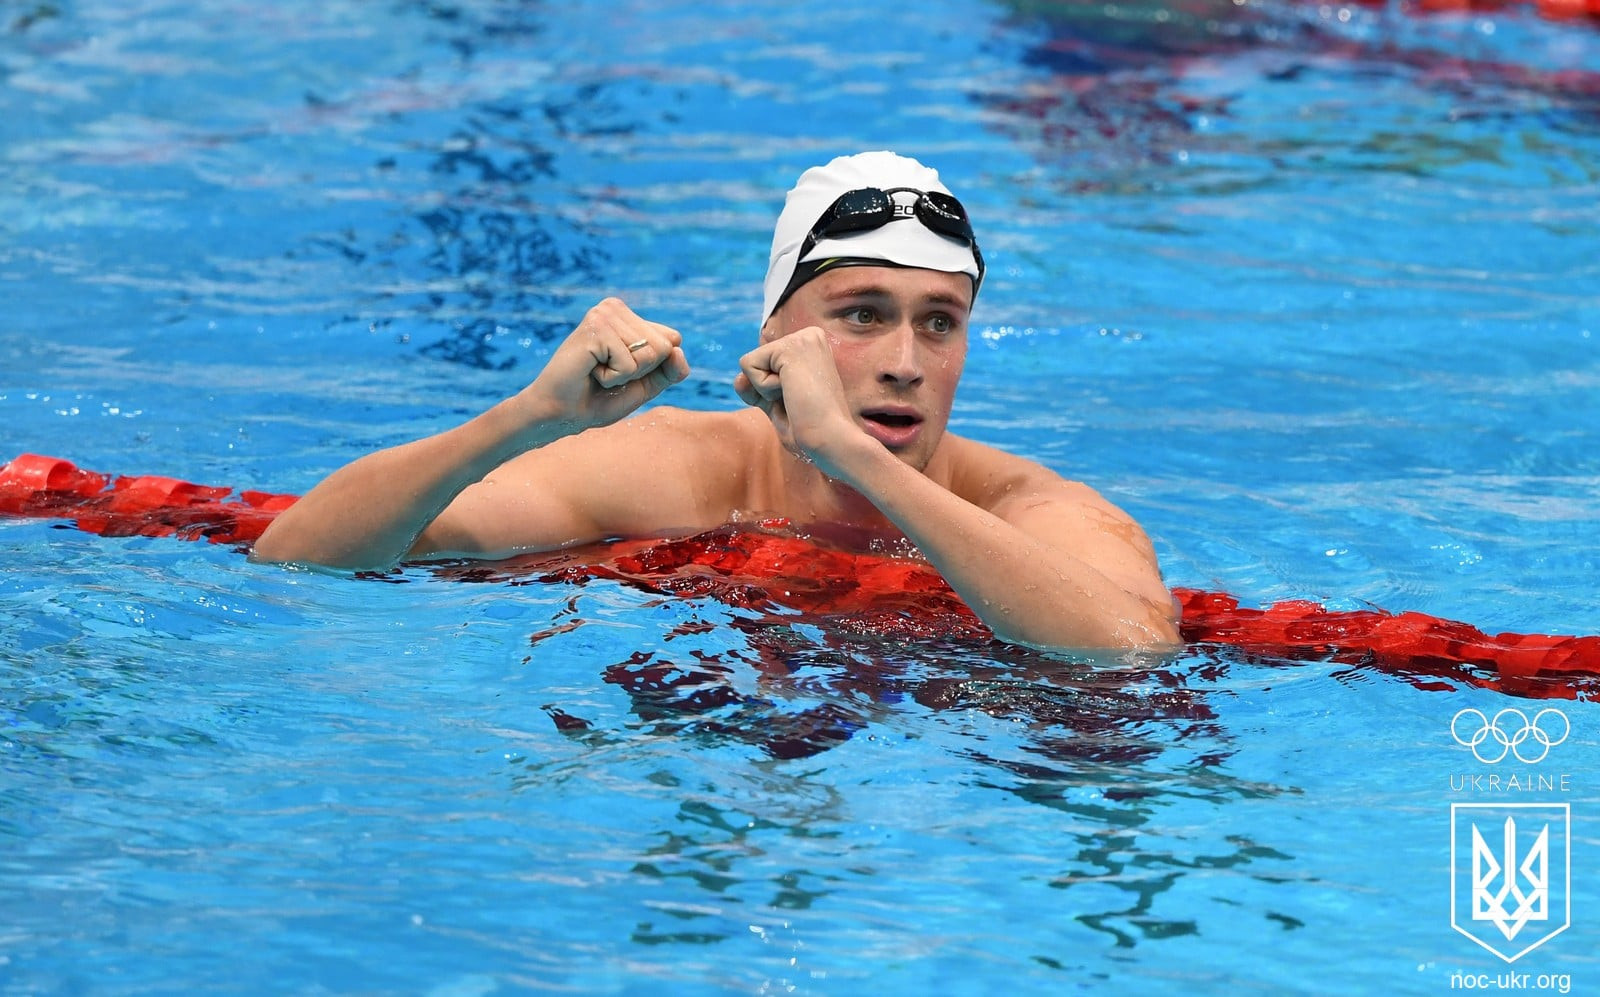 Українець став бронзовим призером чемпіонату світу з плавання - зображення